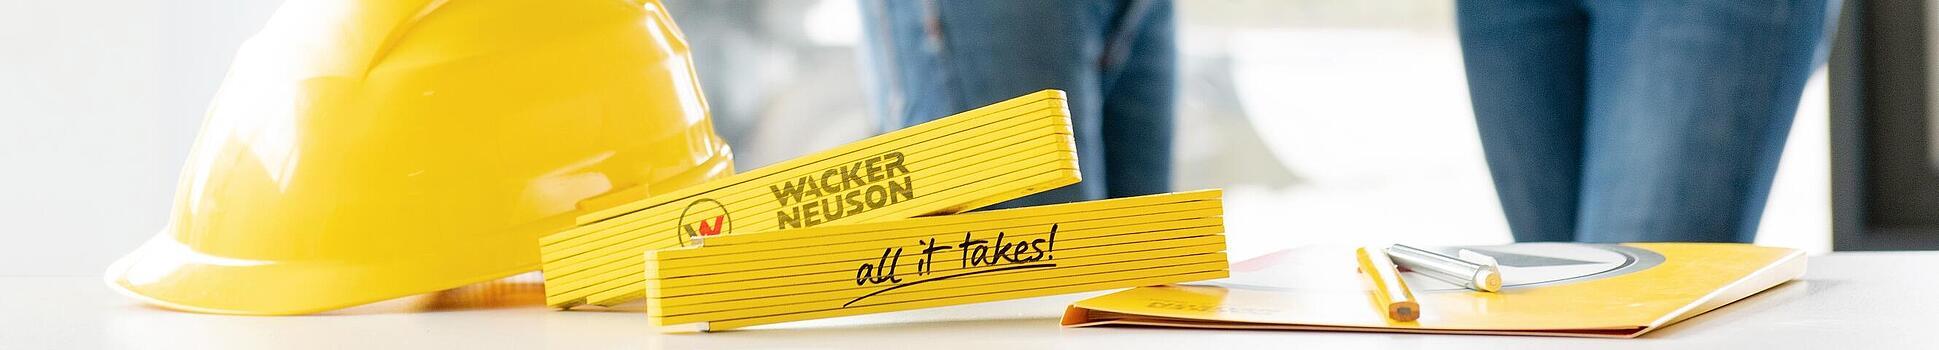 На переднем плане на столе лежит сувенирная продукция Wacker Neuson, на заднем плане сотрудник компании Wacker Neuson.